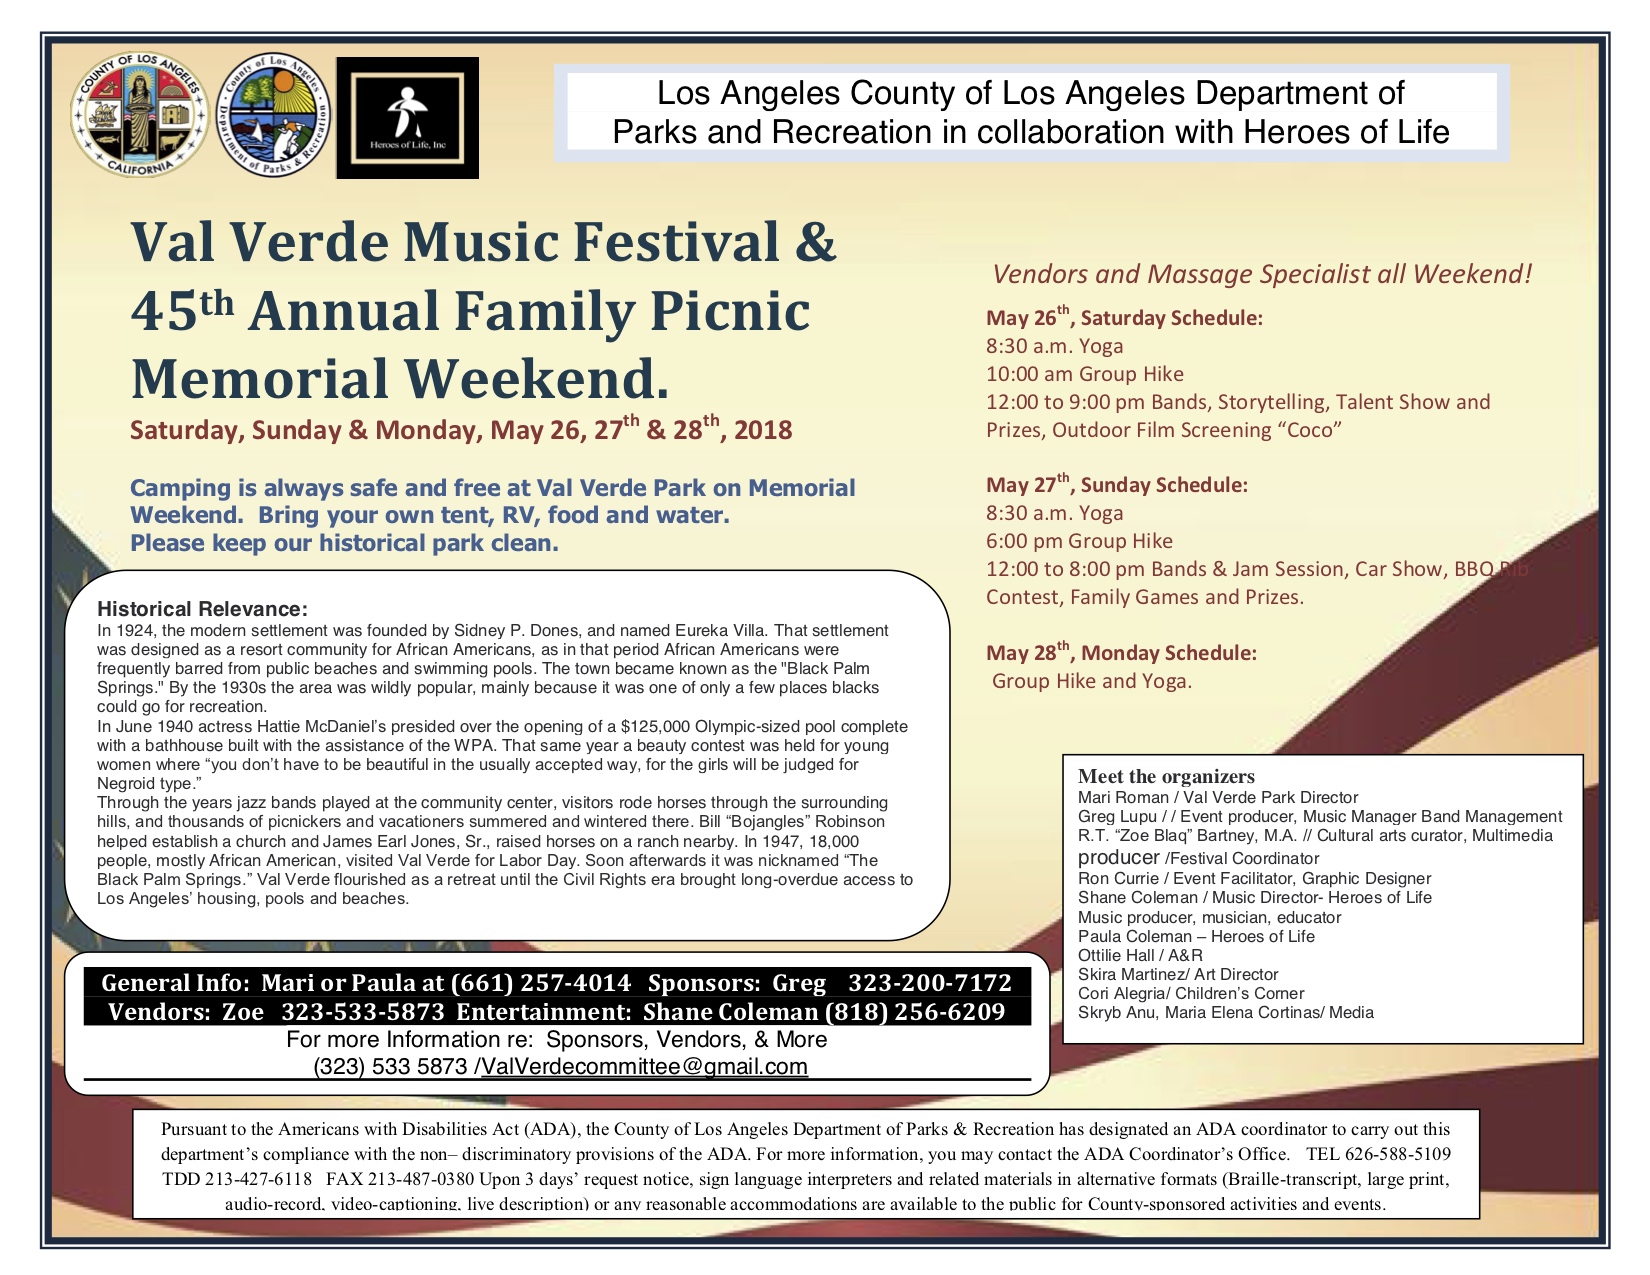 Val-Verde-Park-Memorial-Day-Weekend-Event-Flyer-5-15-2018